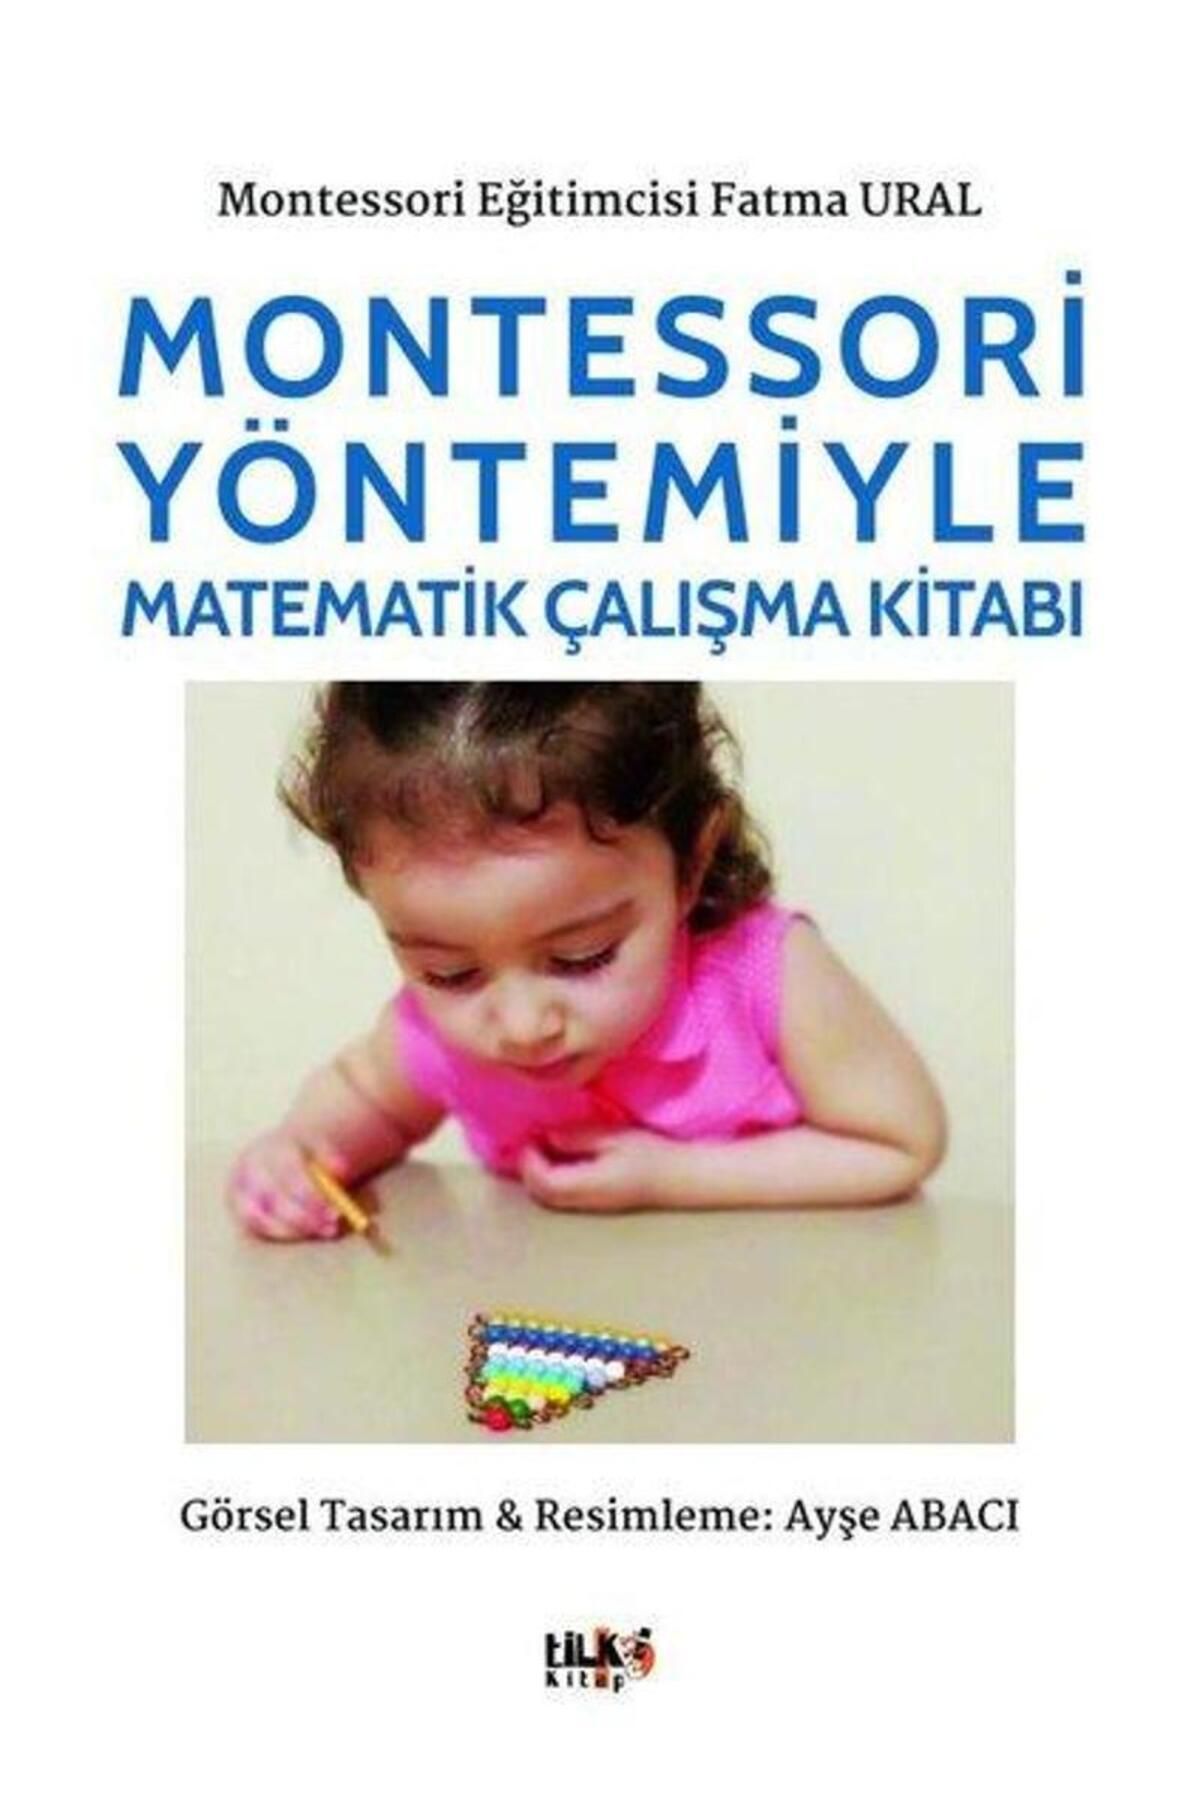 Tilki Kitap Montessori Yöntemiyle Matematik Çalışma